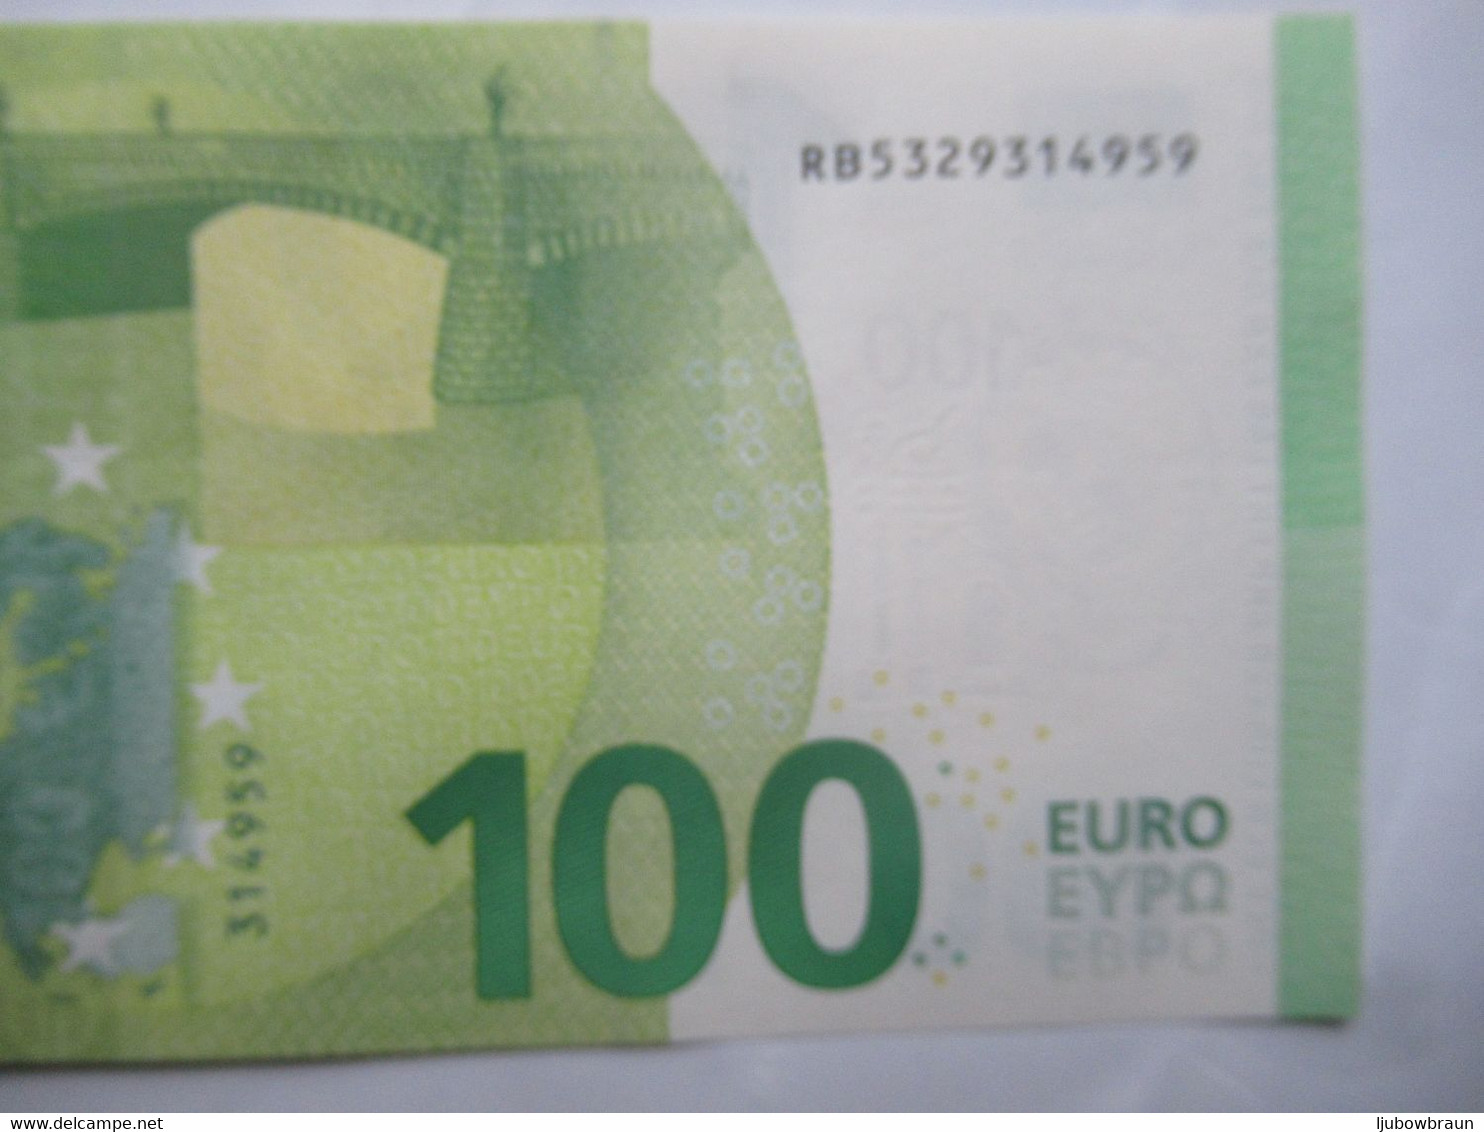 100 Euro-Schein RB(R004, R007, R008, R011)) Draghi unc. Preiß für 1x